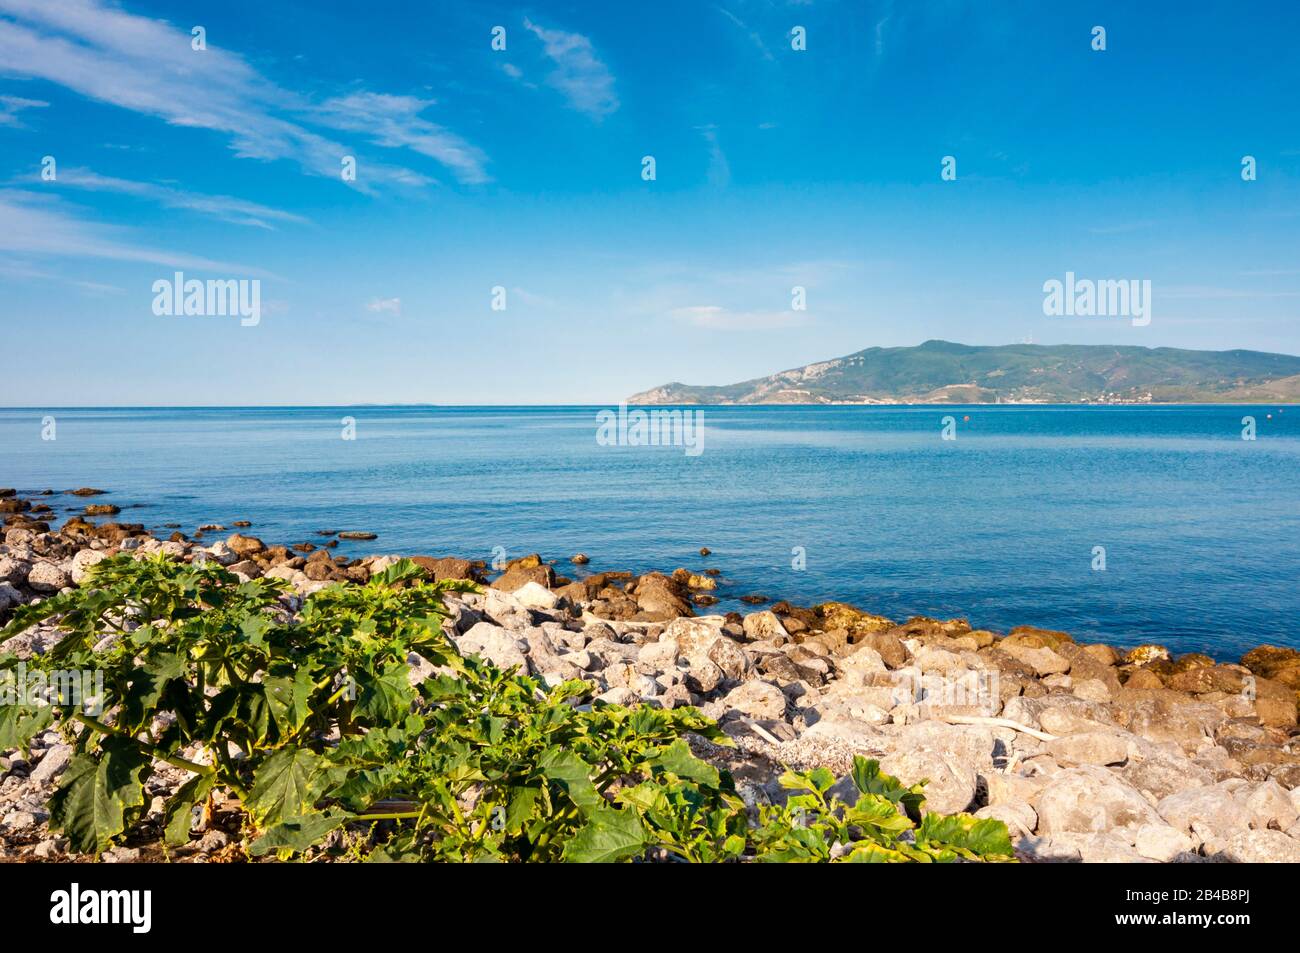 Italy, Tuscany, Grosseto province, Maremma, Feniglia, Porto Ercole in front, Tyrrhenian Sea Stock Photo